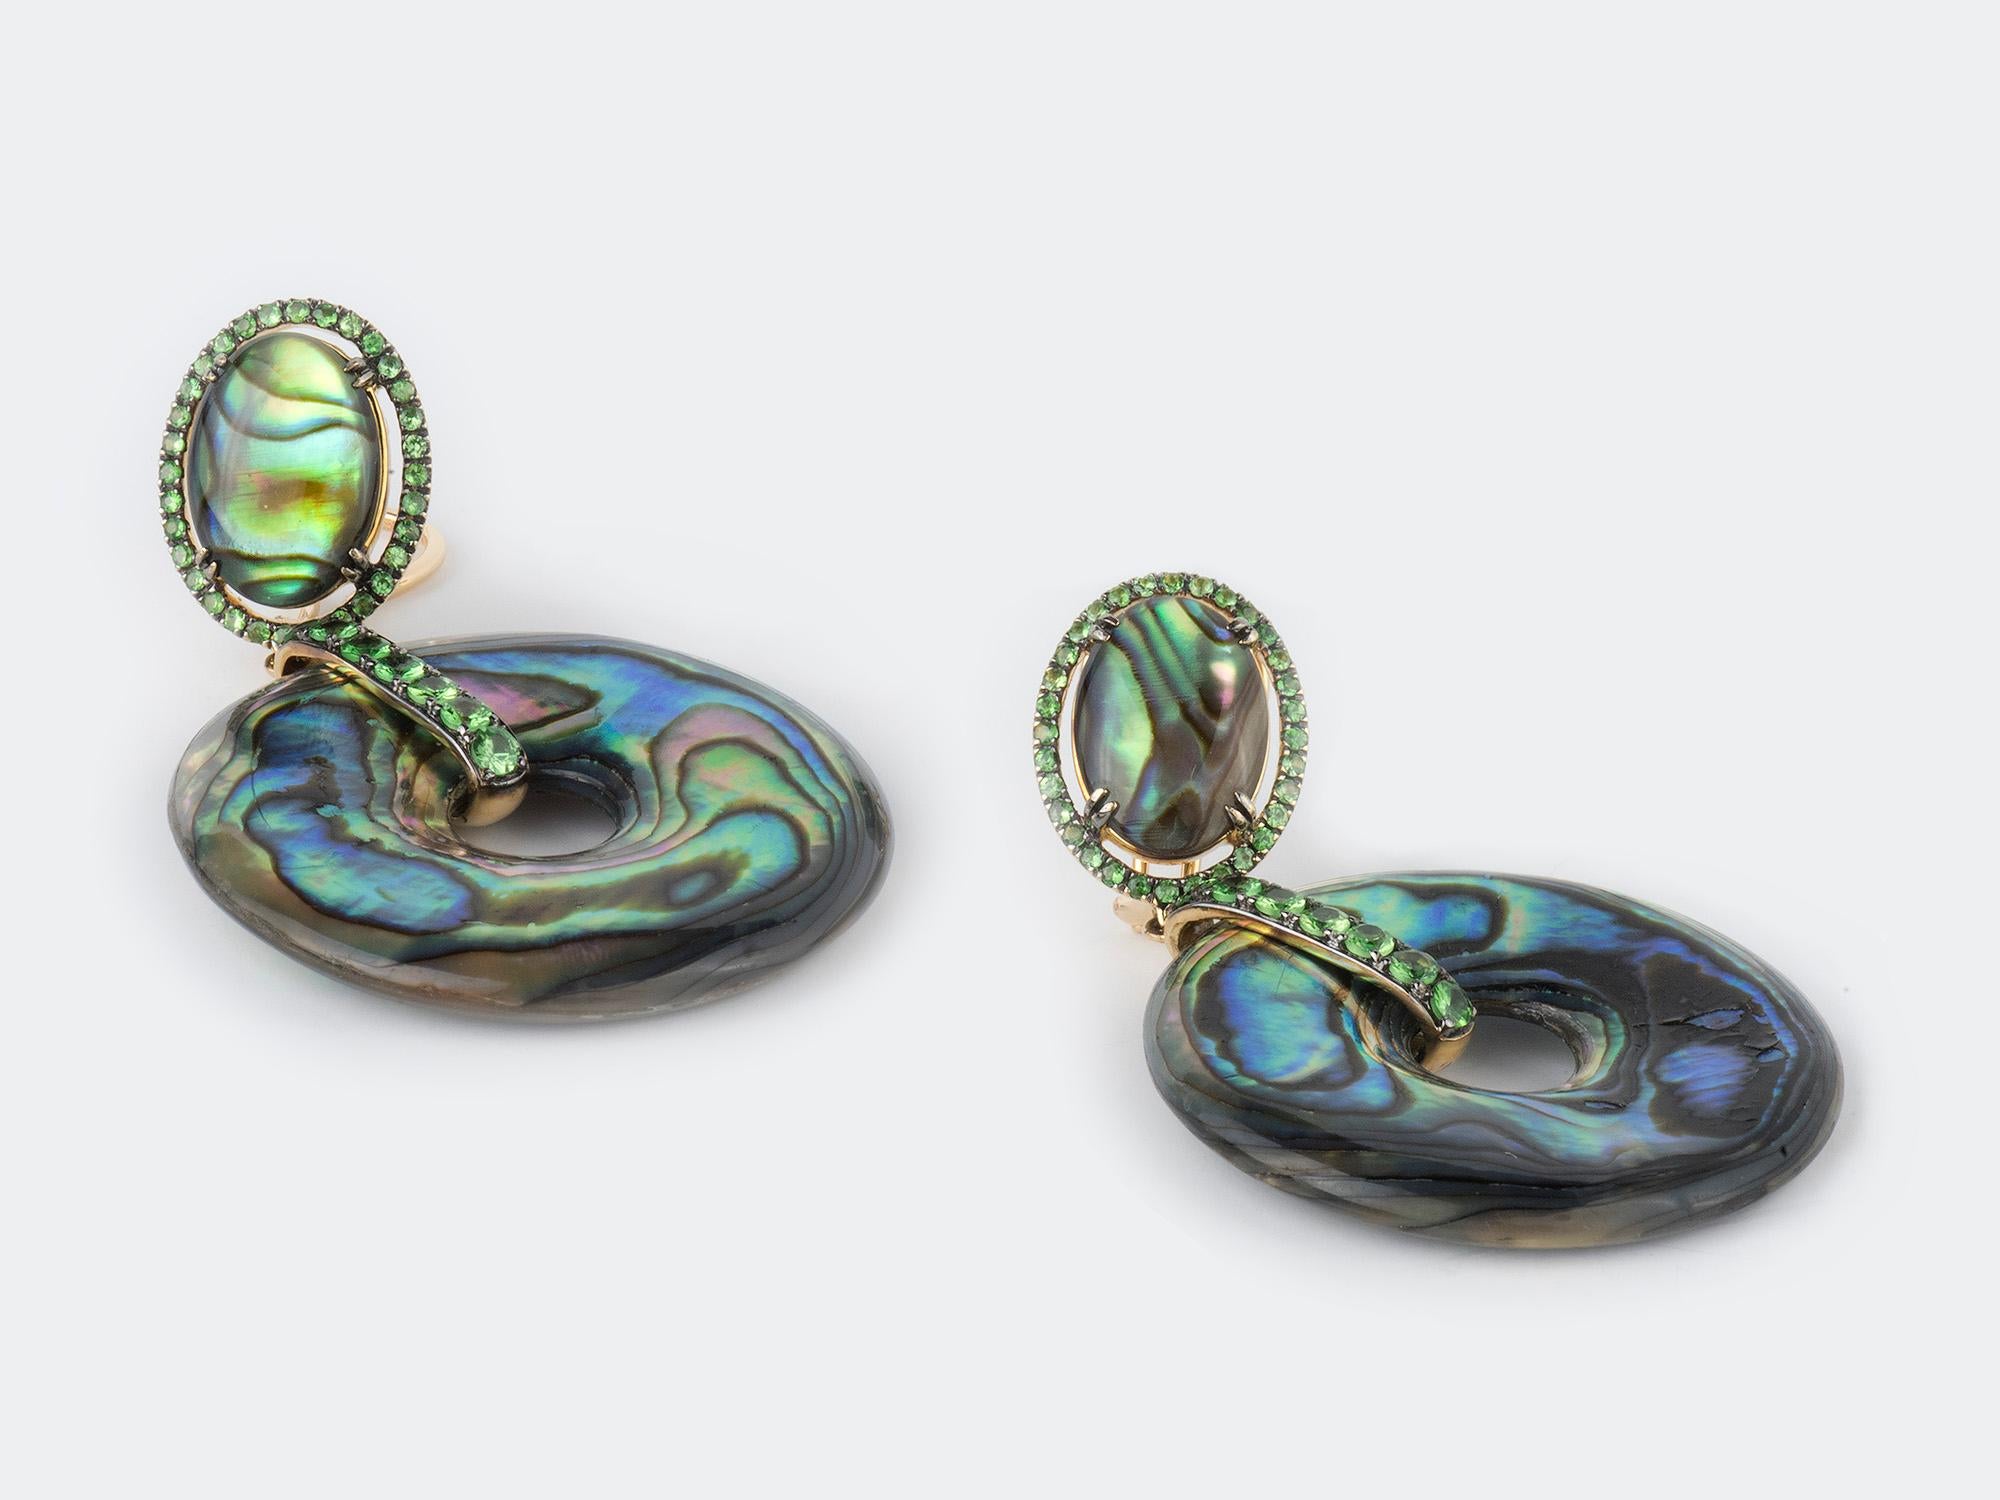 18k Abalone shell ear pendants set in tsavorite garnet bezels. Signed: 750 GOSHWARA.